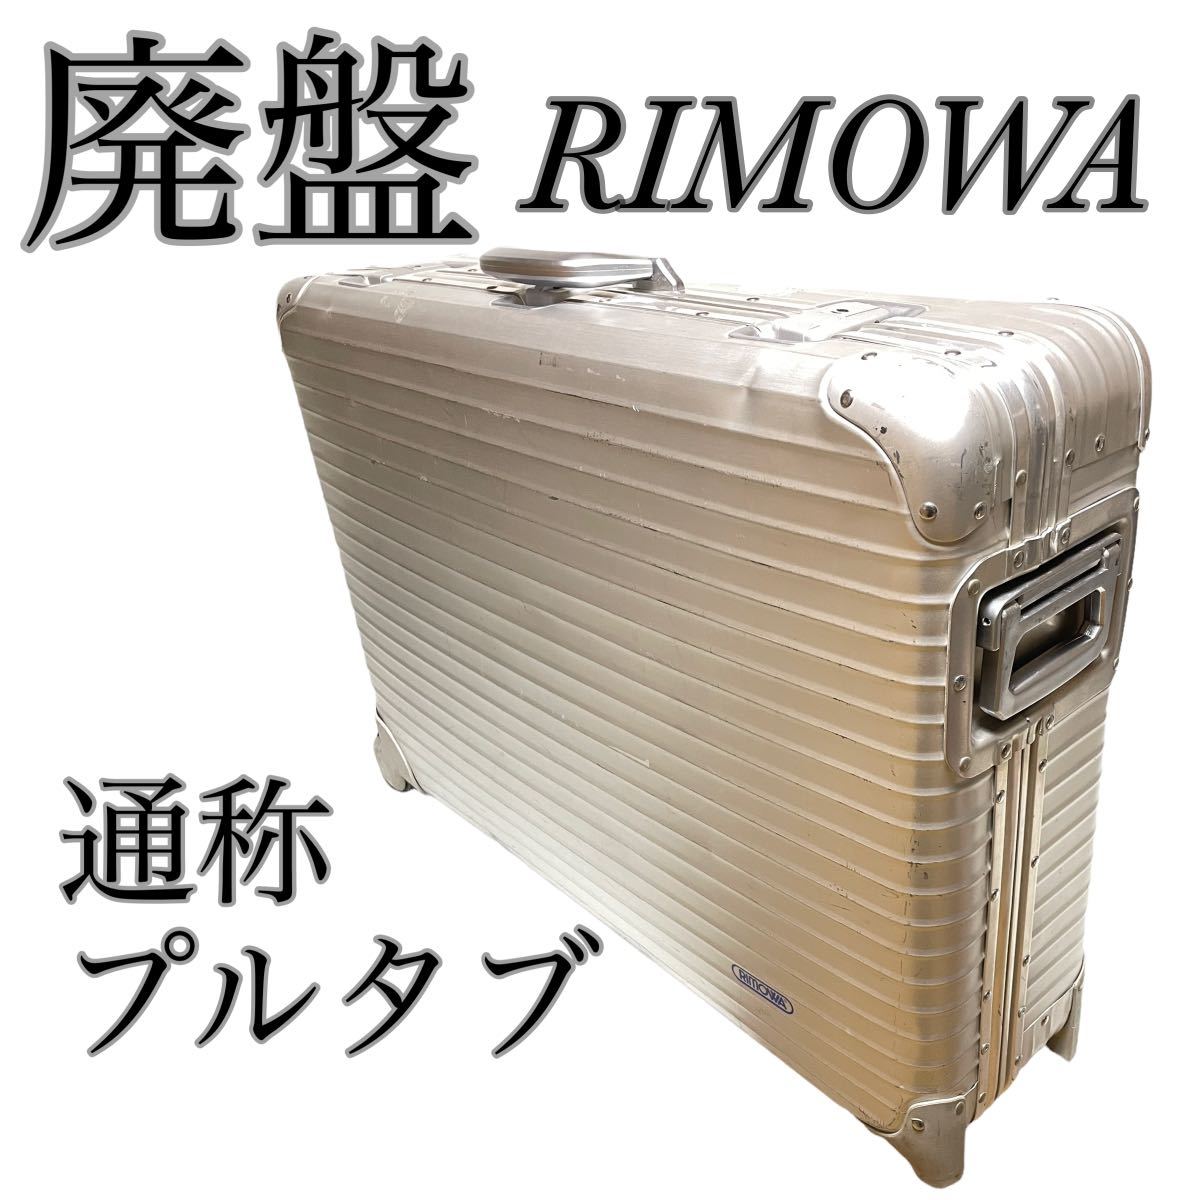 15275円 [並行輸入品] 激レア 正規品 リモワRIMOWA トパーズ アタッシュケース 21L